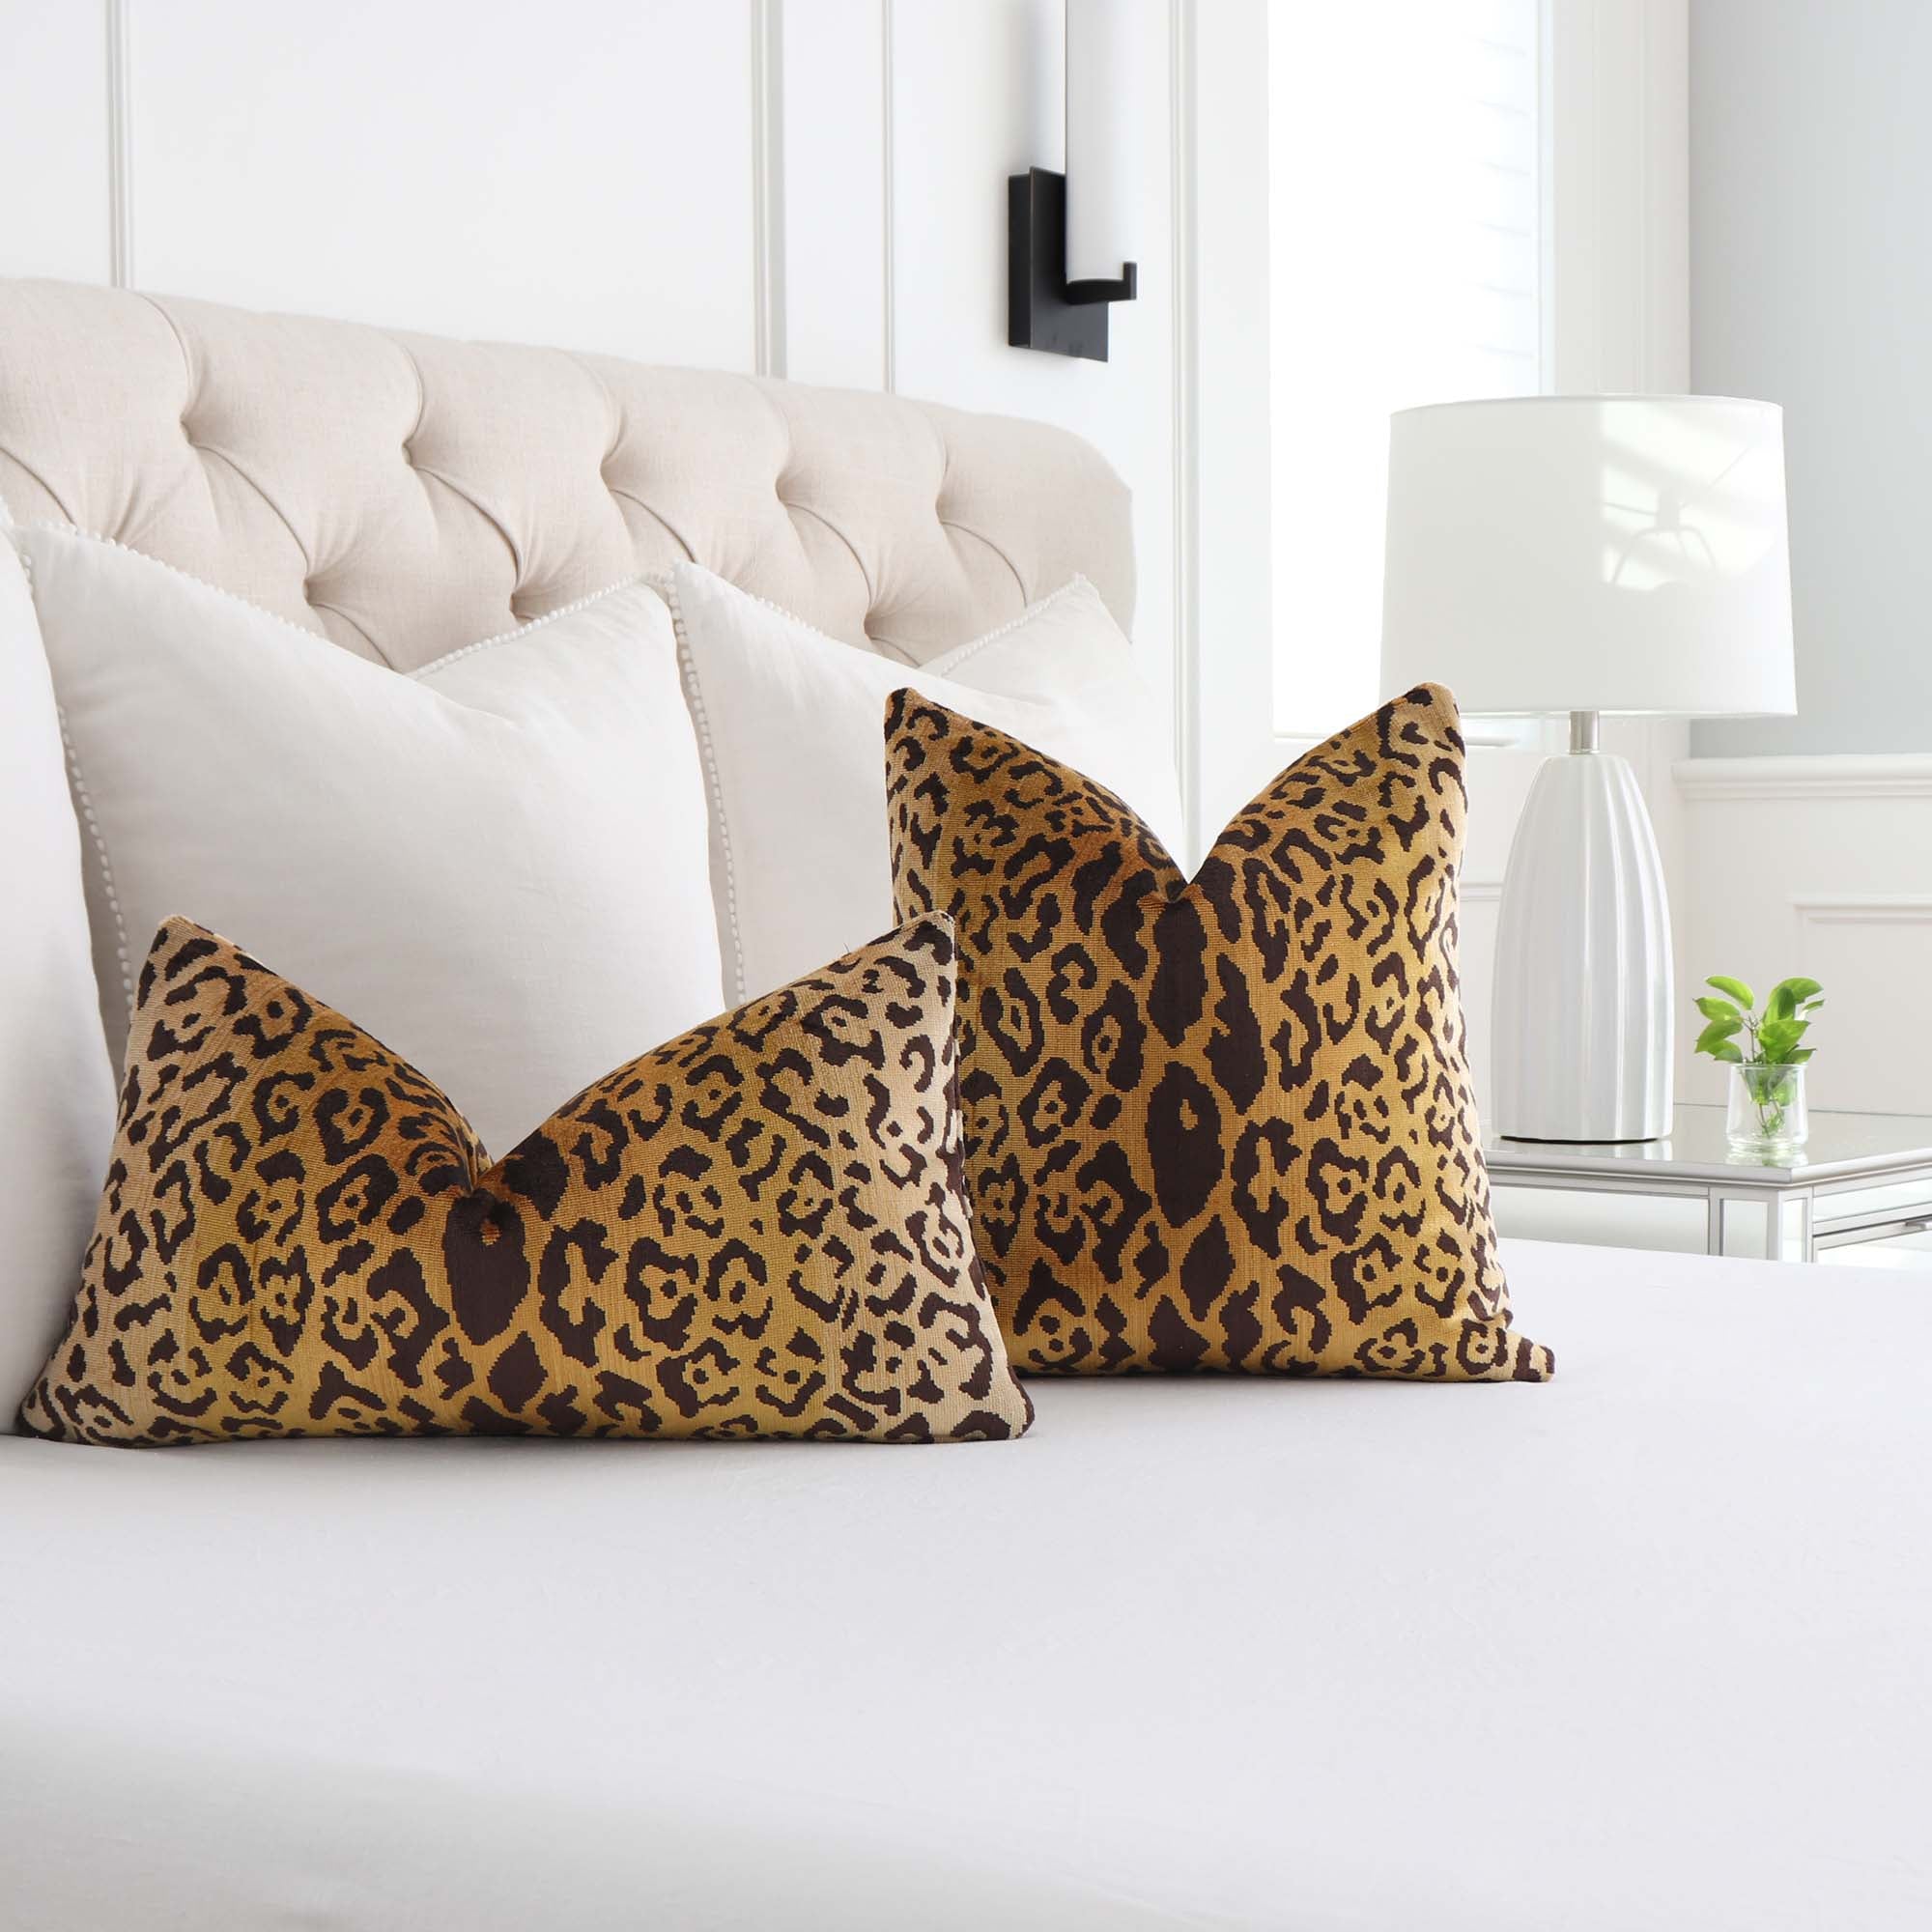 Scalamandre Leopardo Ivory Gold Black Silk Velvet Animal Skin Pattern Designer Throw Pillow Cover in Bedroom